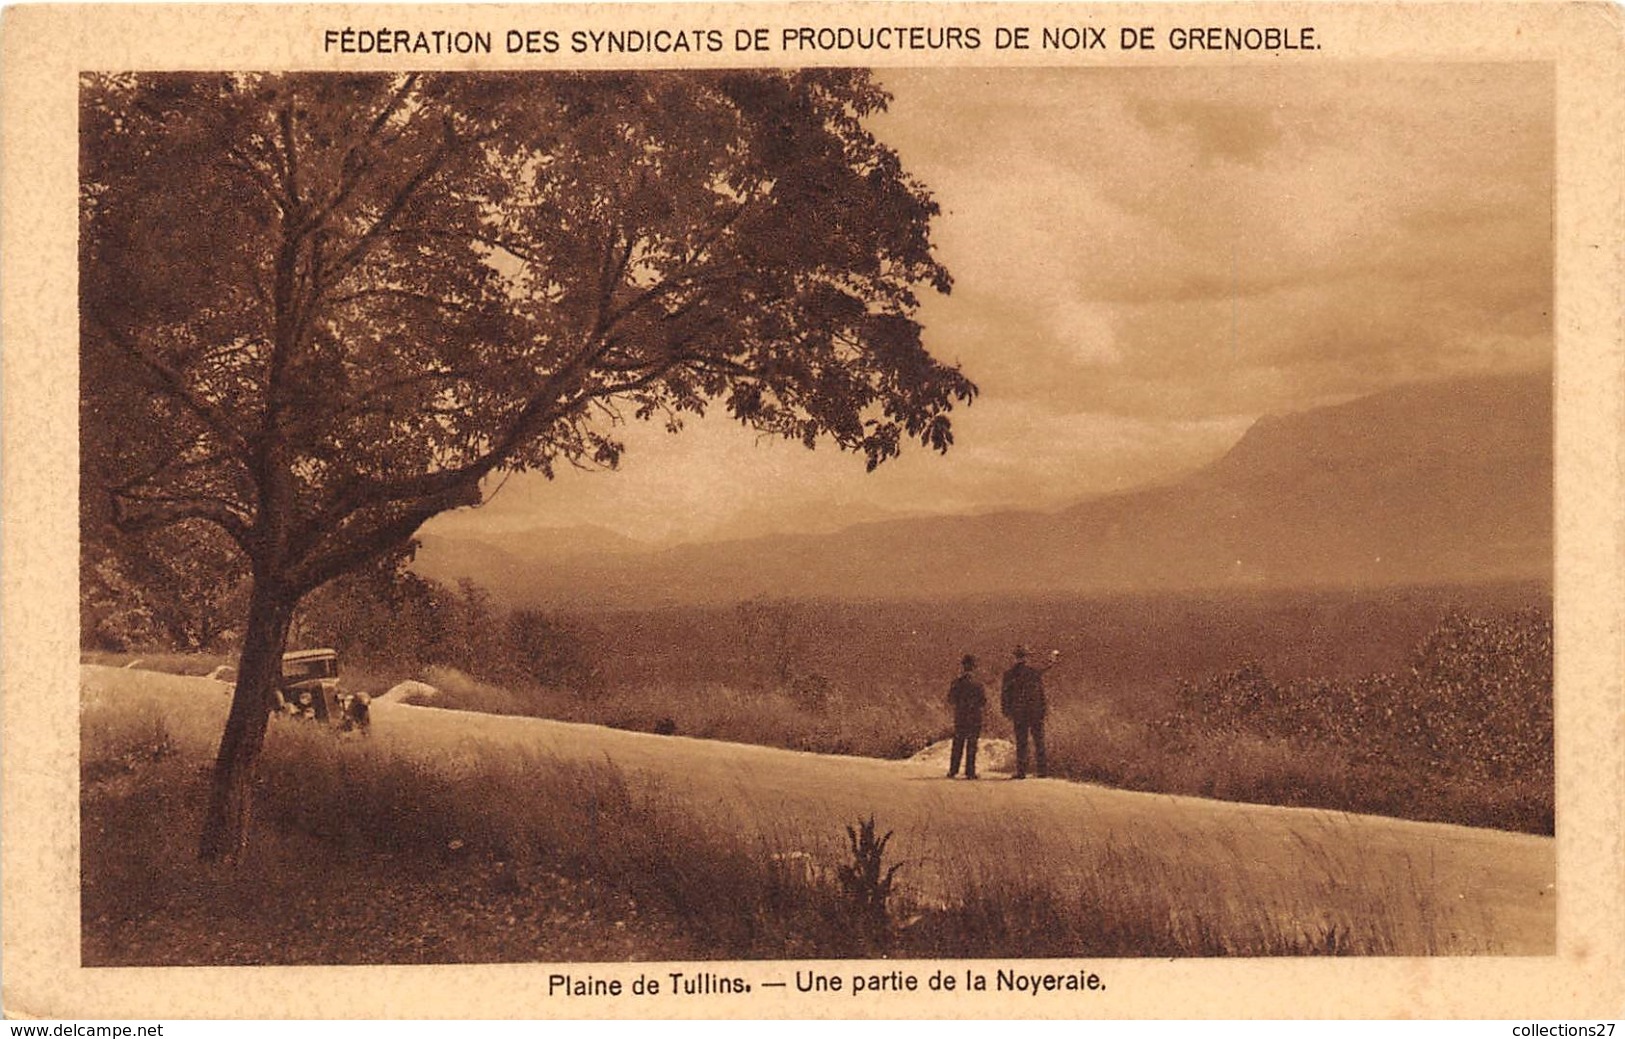 38-TULLINS- LA PLAINE DE TULLINS- UNE PARTIE DE LA NOYERAIE- FEDERATION DES SYNDICATS DE PRODUCTION DE NOIX DE GRENOBLE - Tullins